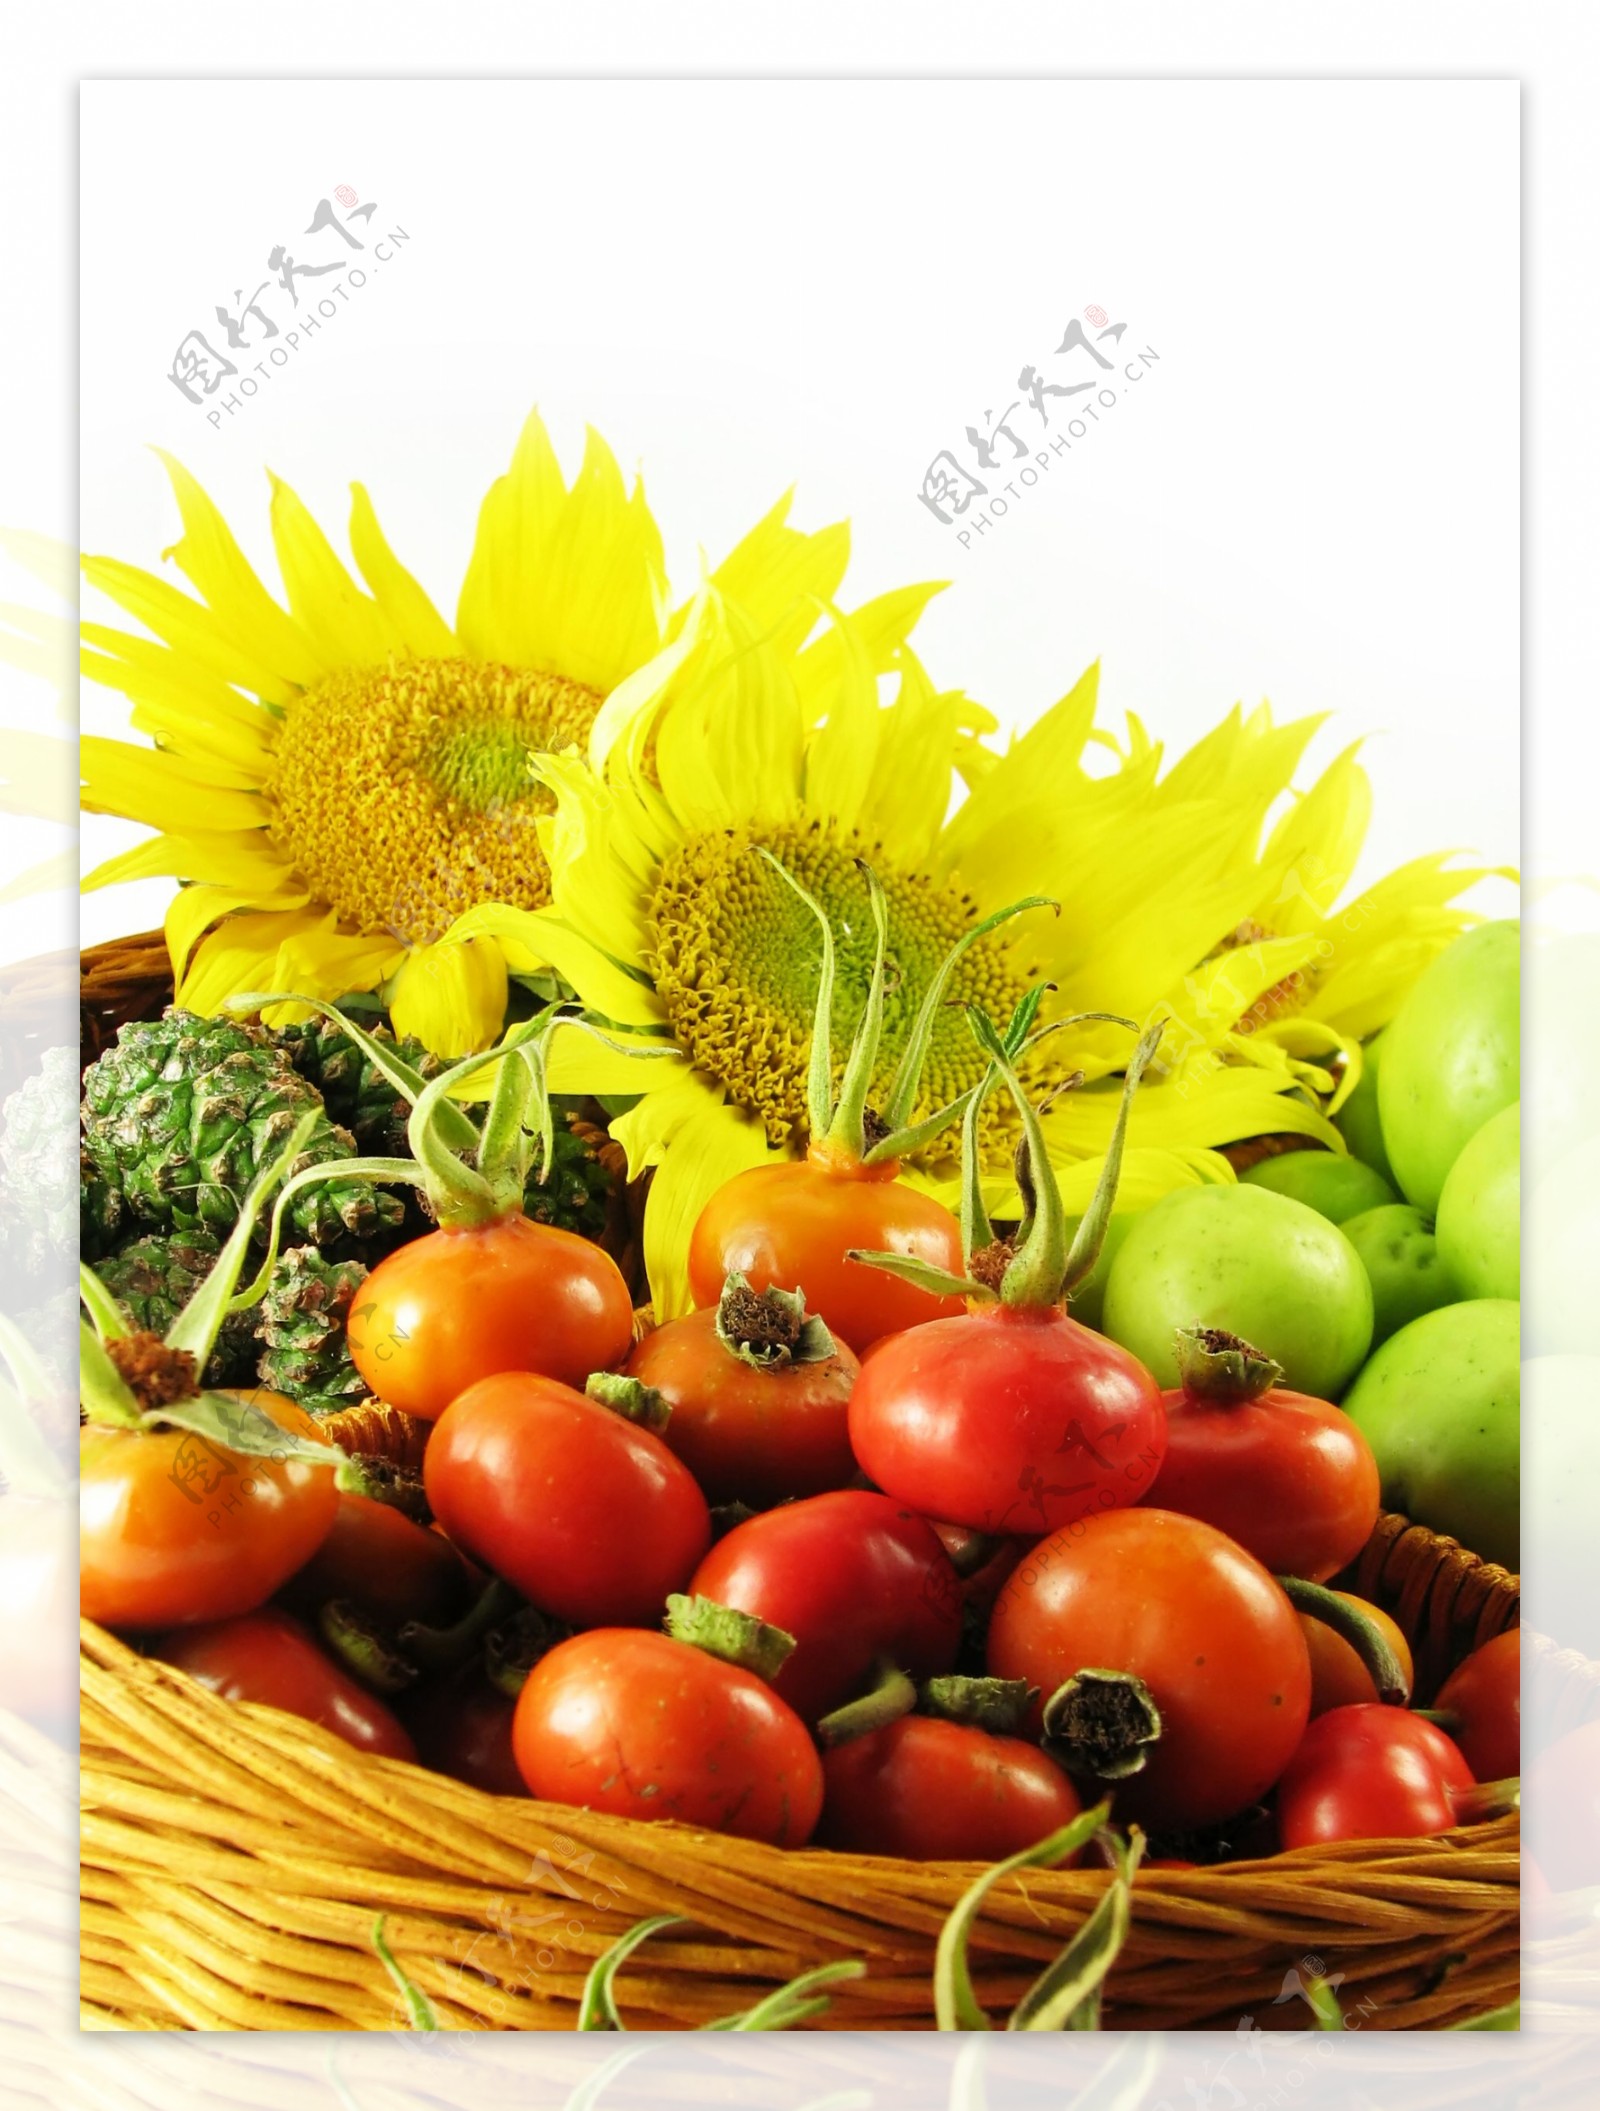 小西红柿蔬菜图片